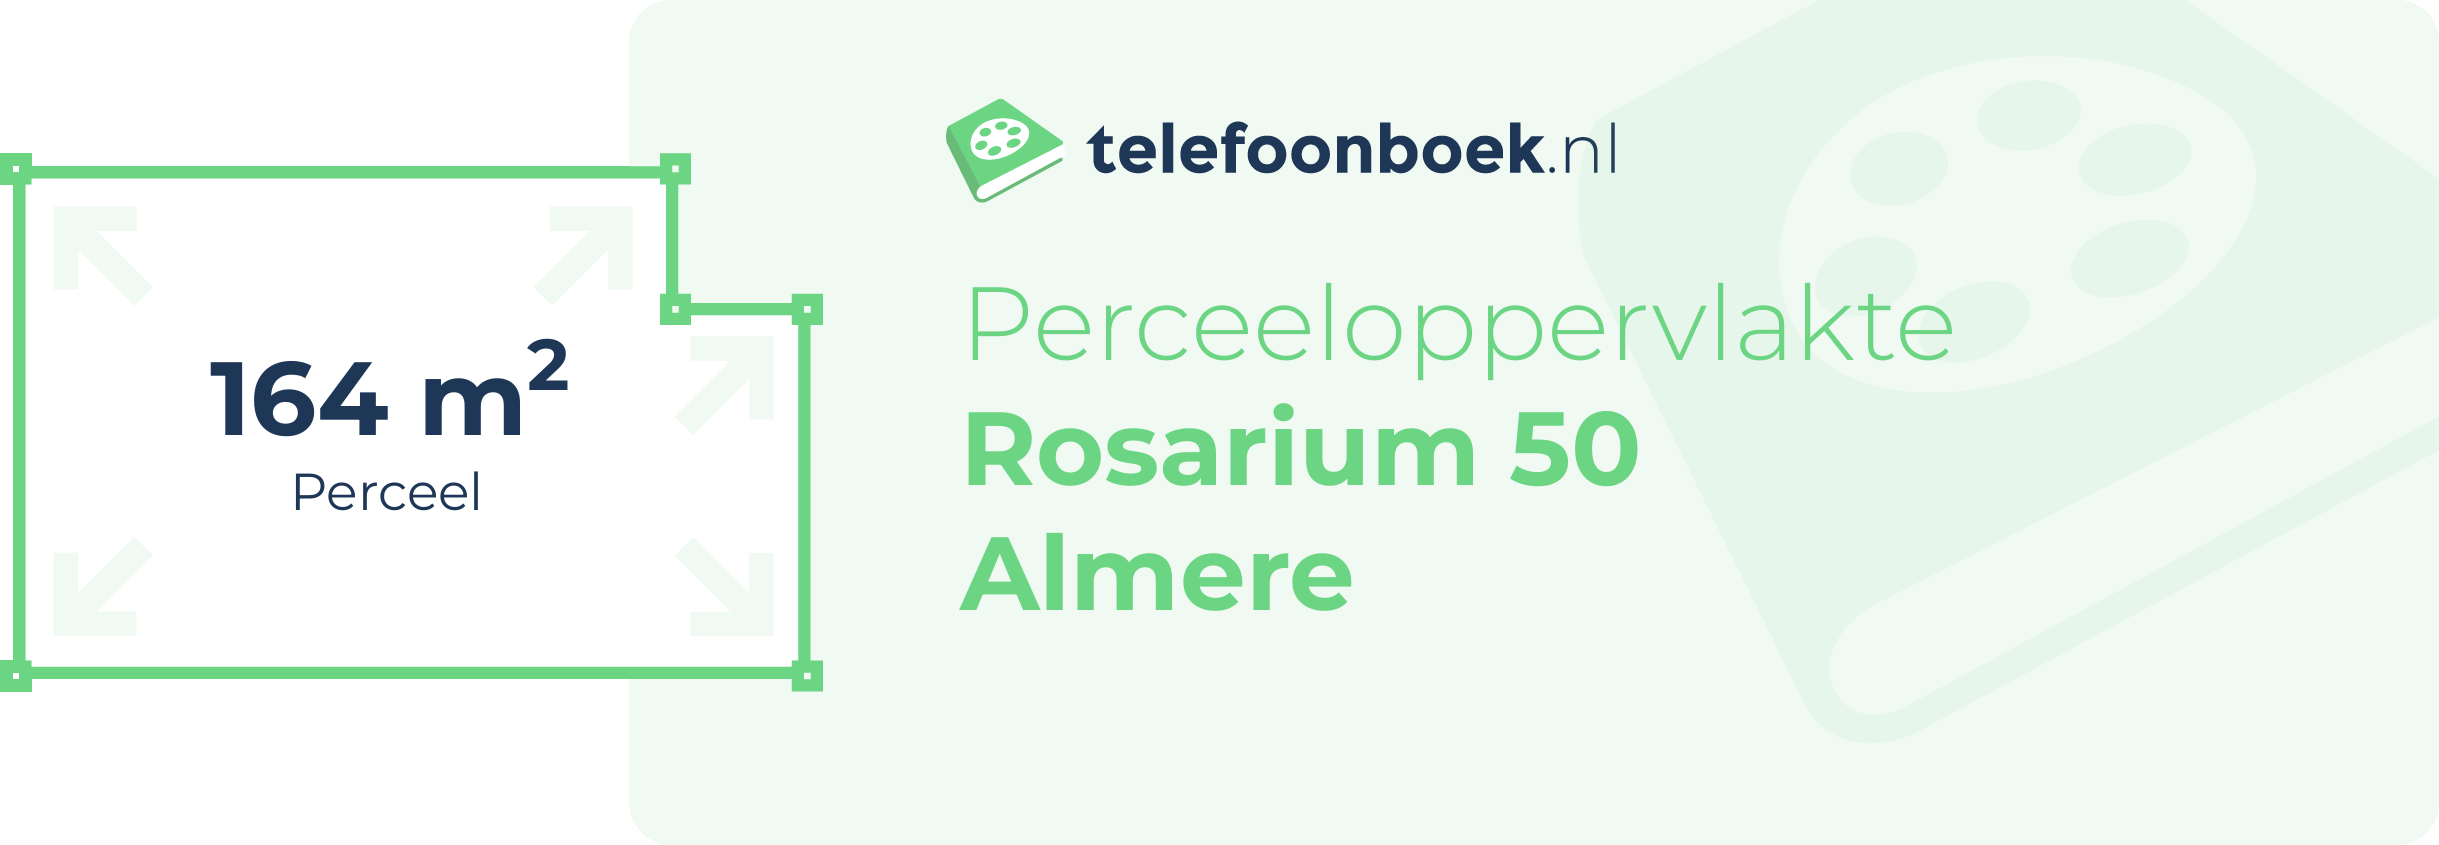 Perceeloppervlakte Rosarium 50 Almere